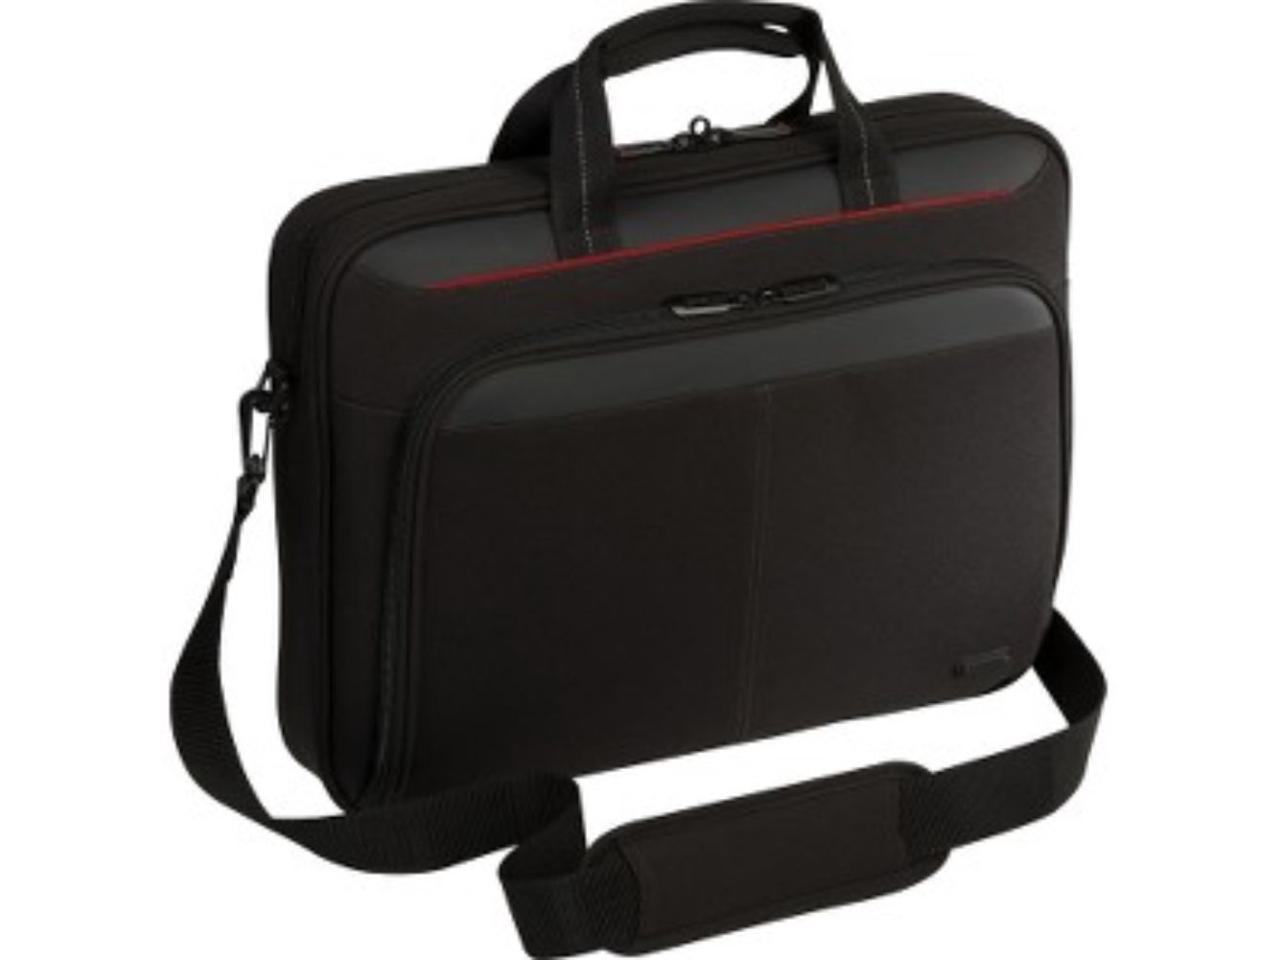 Targus 15.6" Classic Slim Briefcase - TCT027US